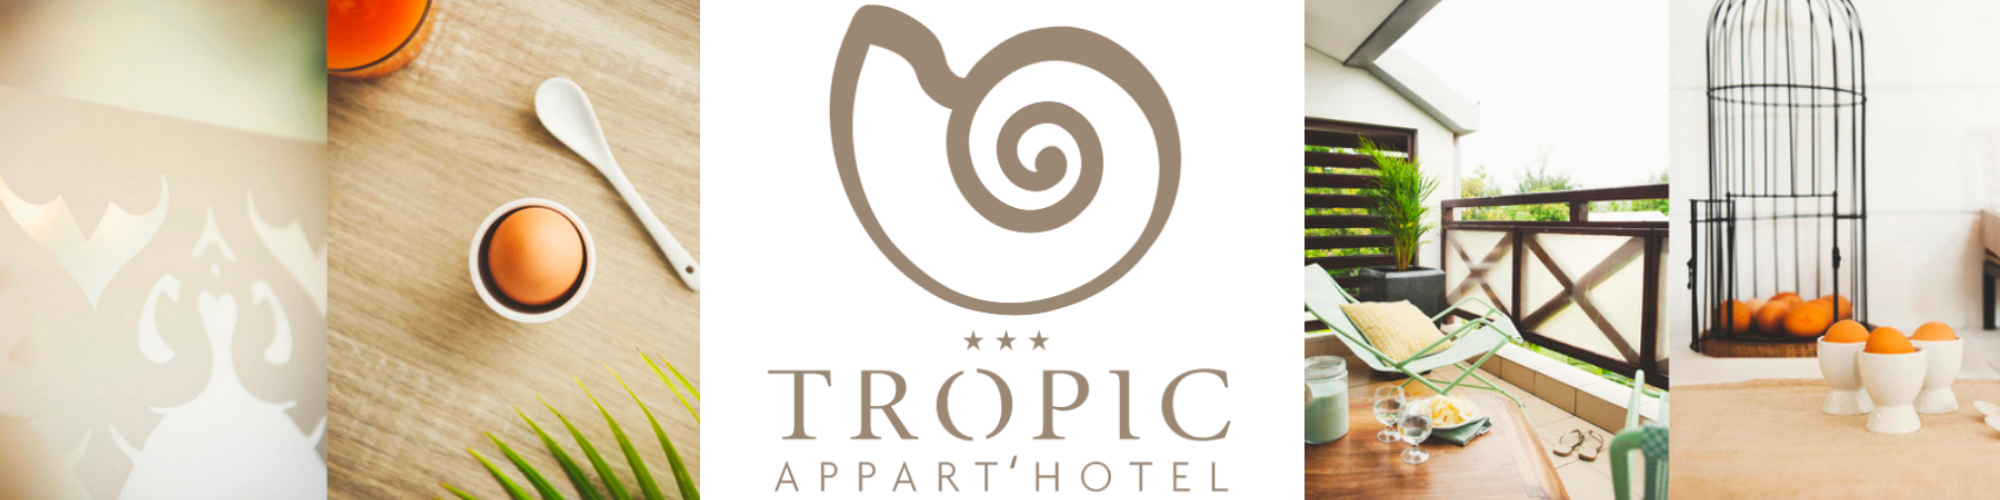 Tropic Hotel du 26 Aout au 29 Novembre